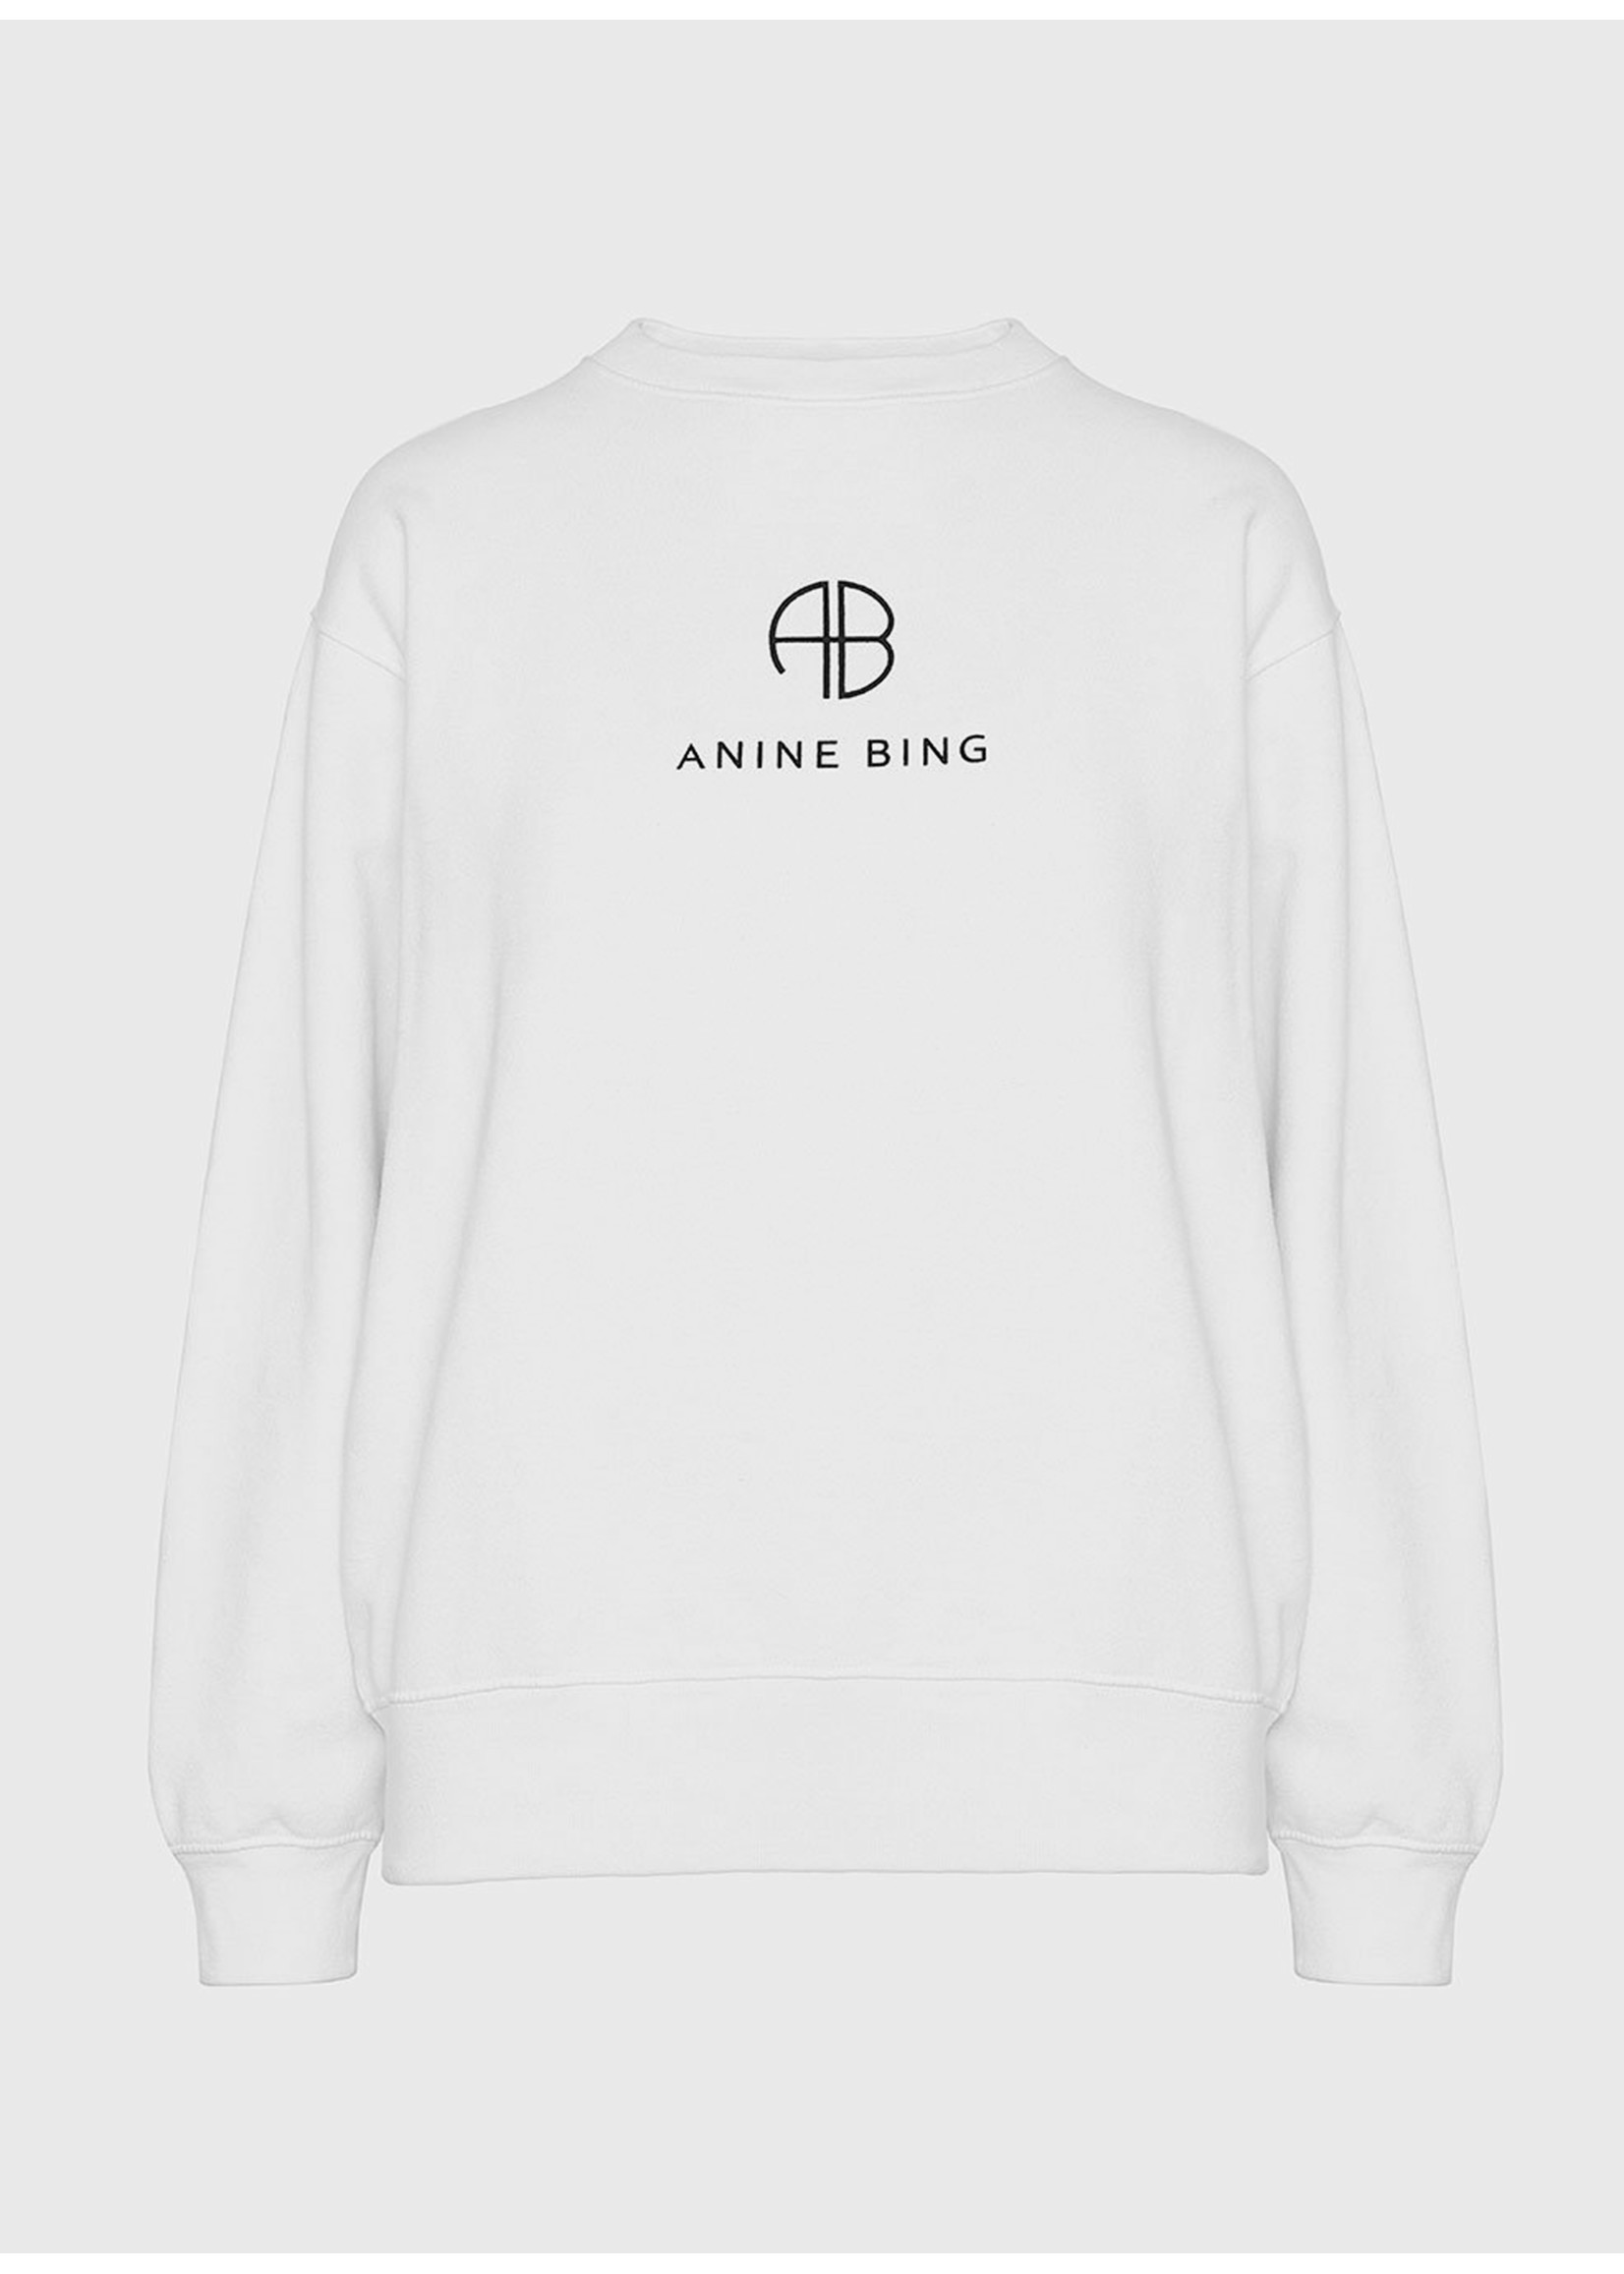 Anine Bing Ramona sweatshirt monogram white